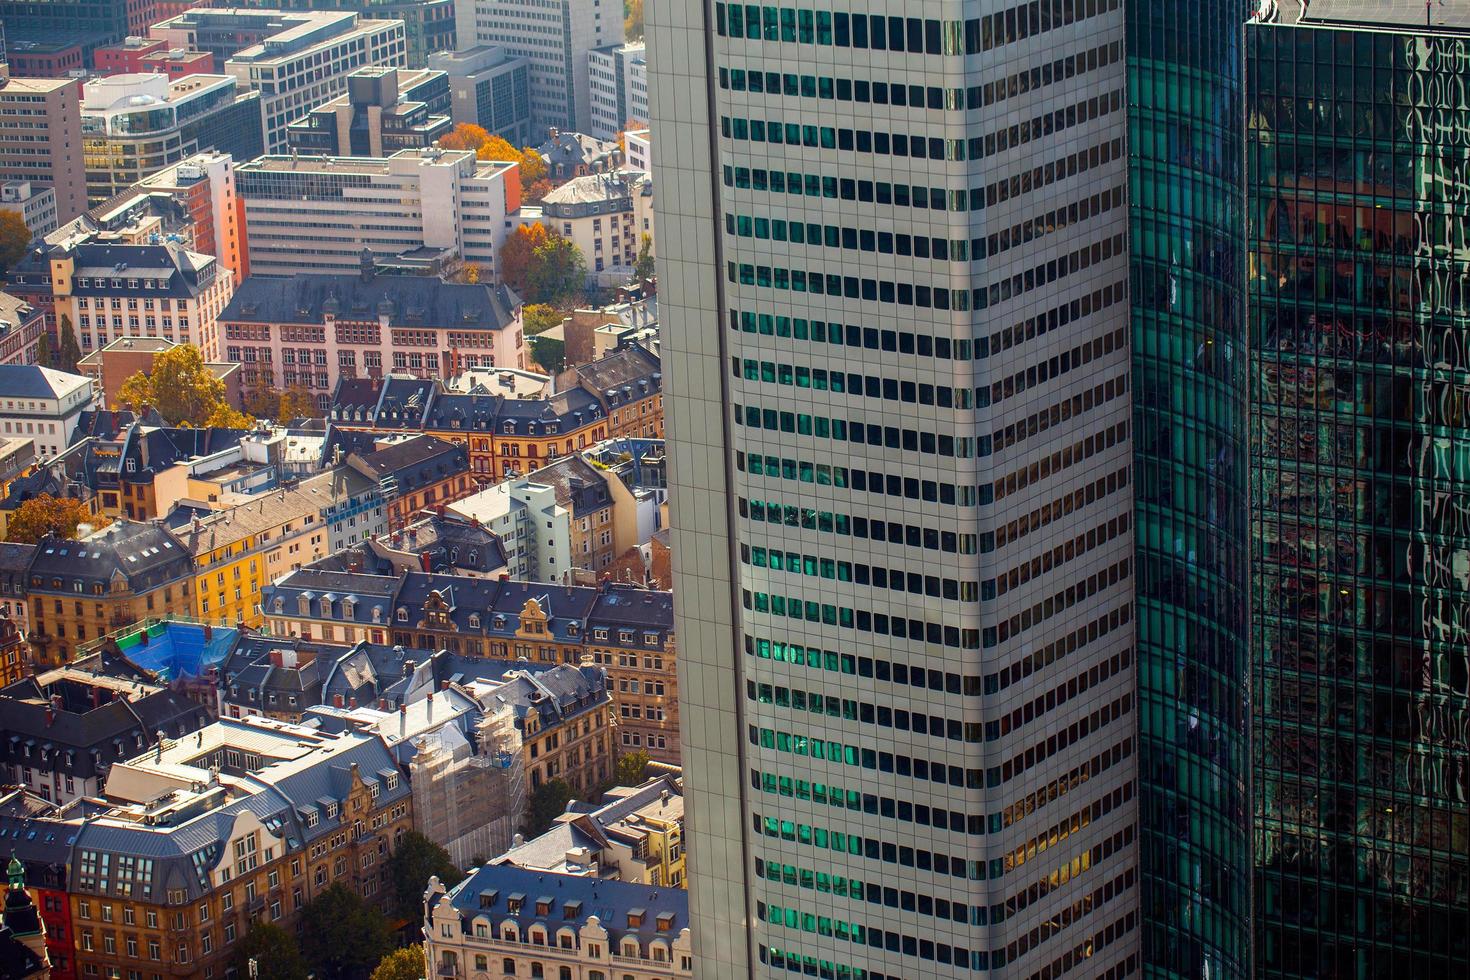 Edificios generales del paisaje urbano europeo en Alemania Frankfurt foto